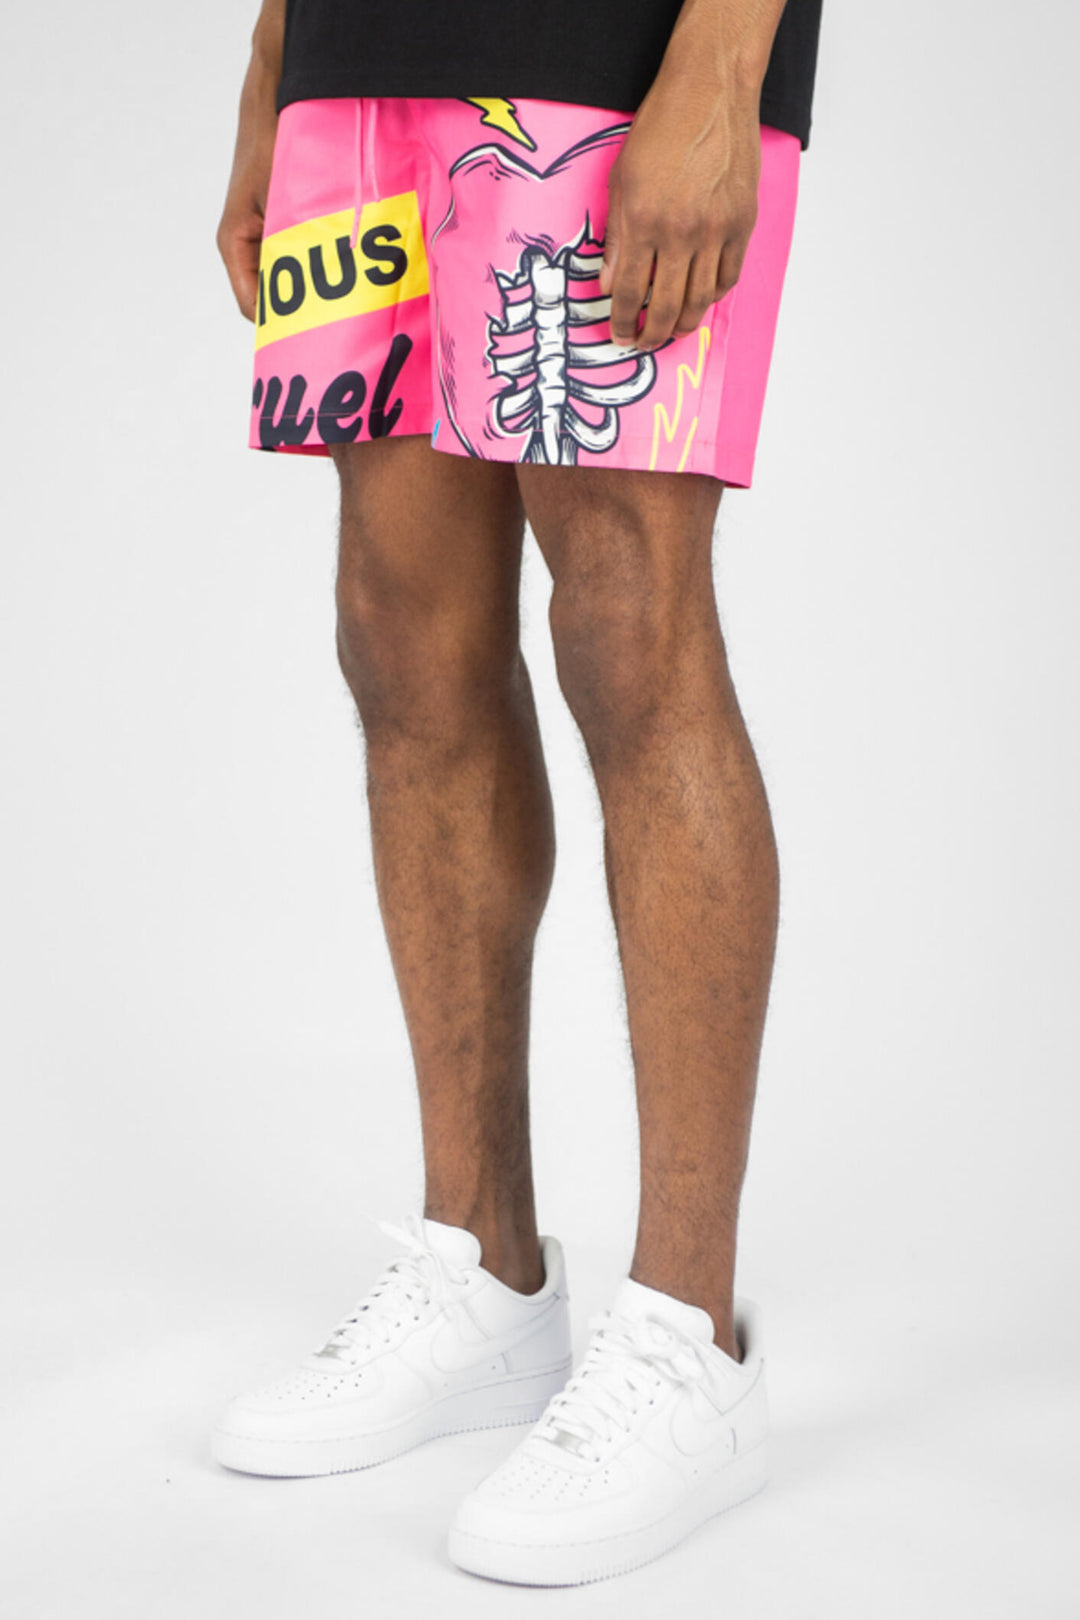 Heartless Board Shorts (Hot Pink) (141-982) - Zamage